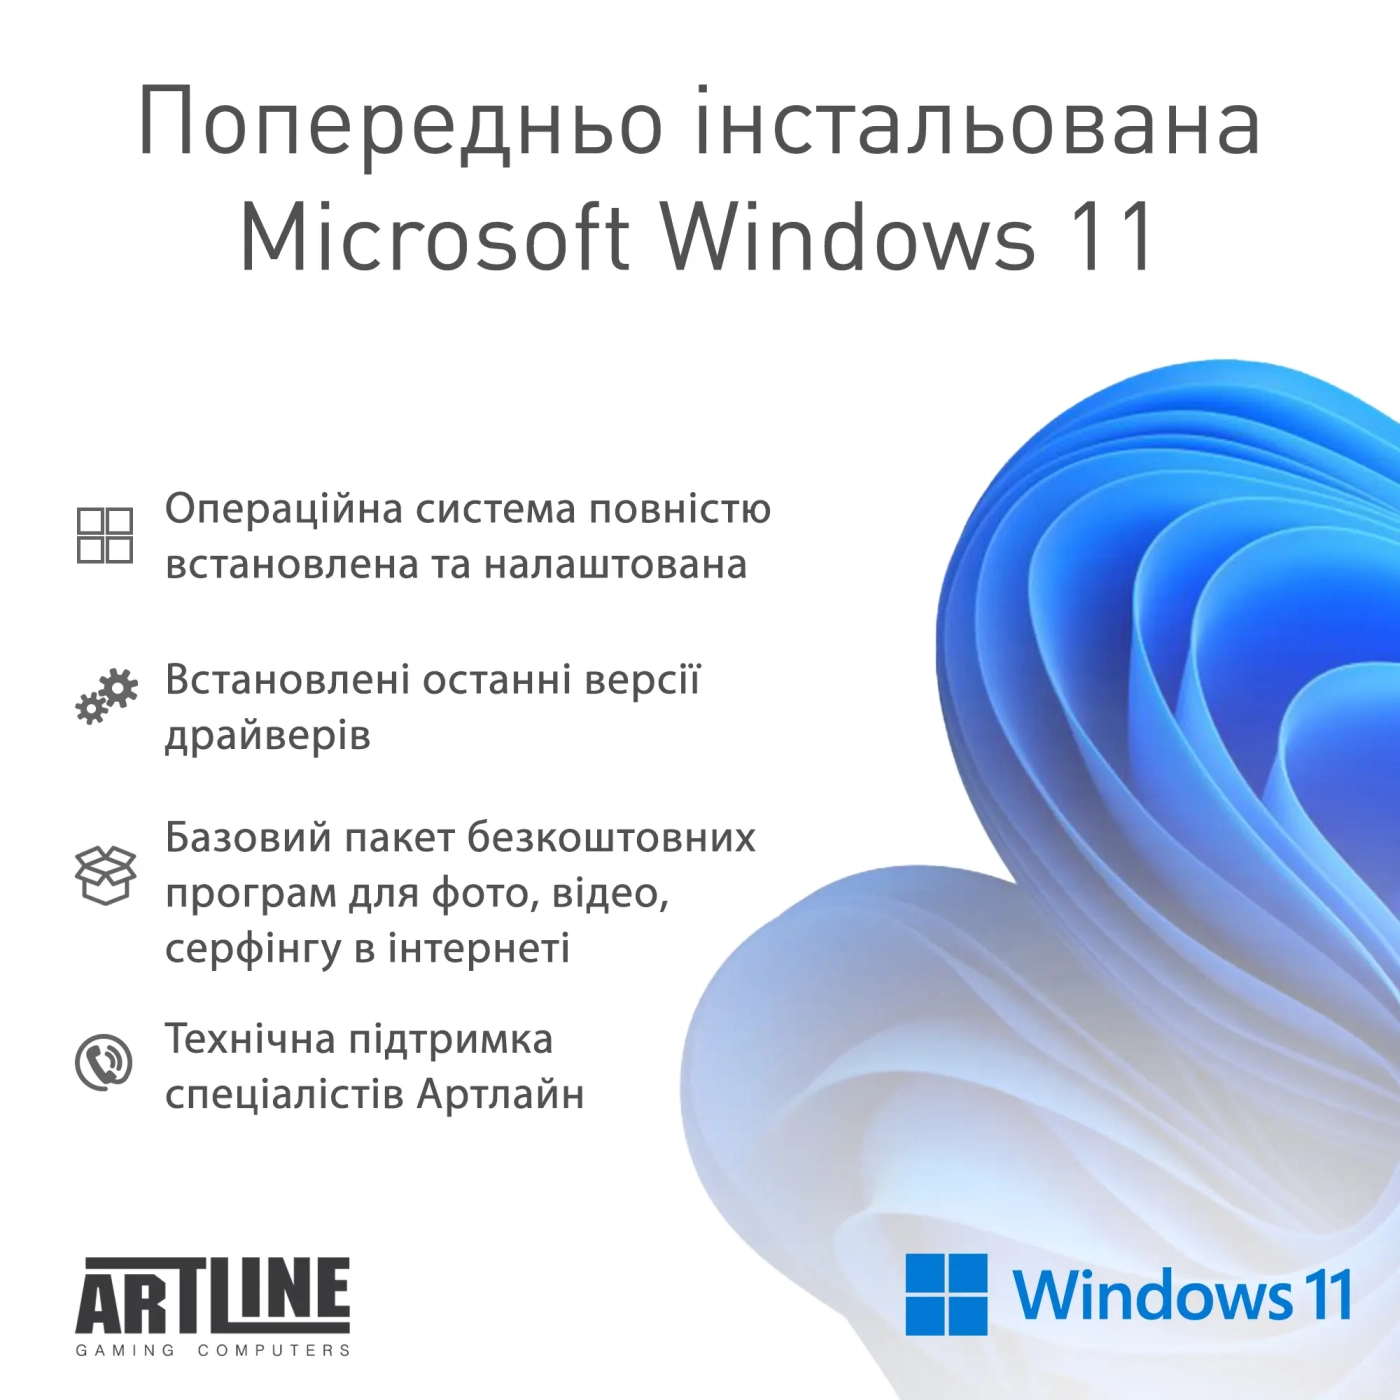 Купить Компьютер ARTLINE Gaming D31 Windows 11 Home (D31v30Win) - фото 12